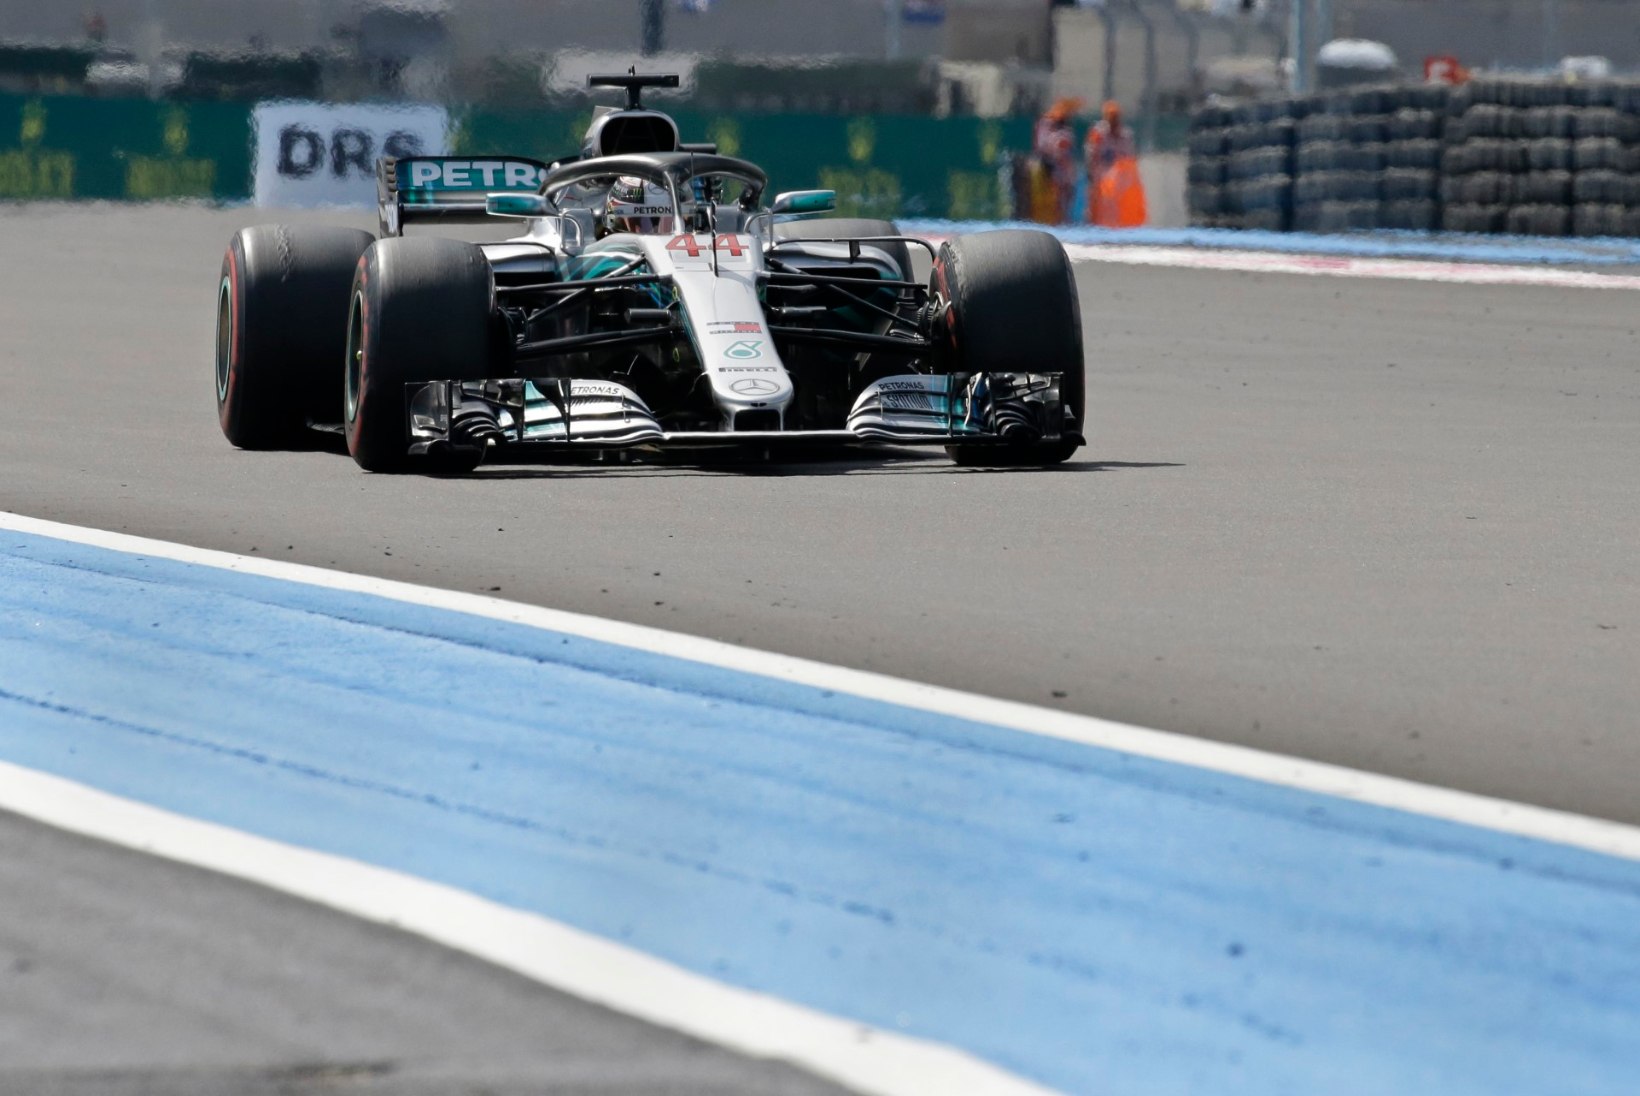 NII SEE JUHTUS | Lewis Hamilton võitis üle pika aja kavas olnud Prantsusmaa F1 etapi ning tõusis sarja liidriks